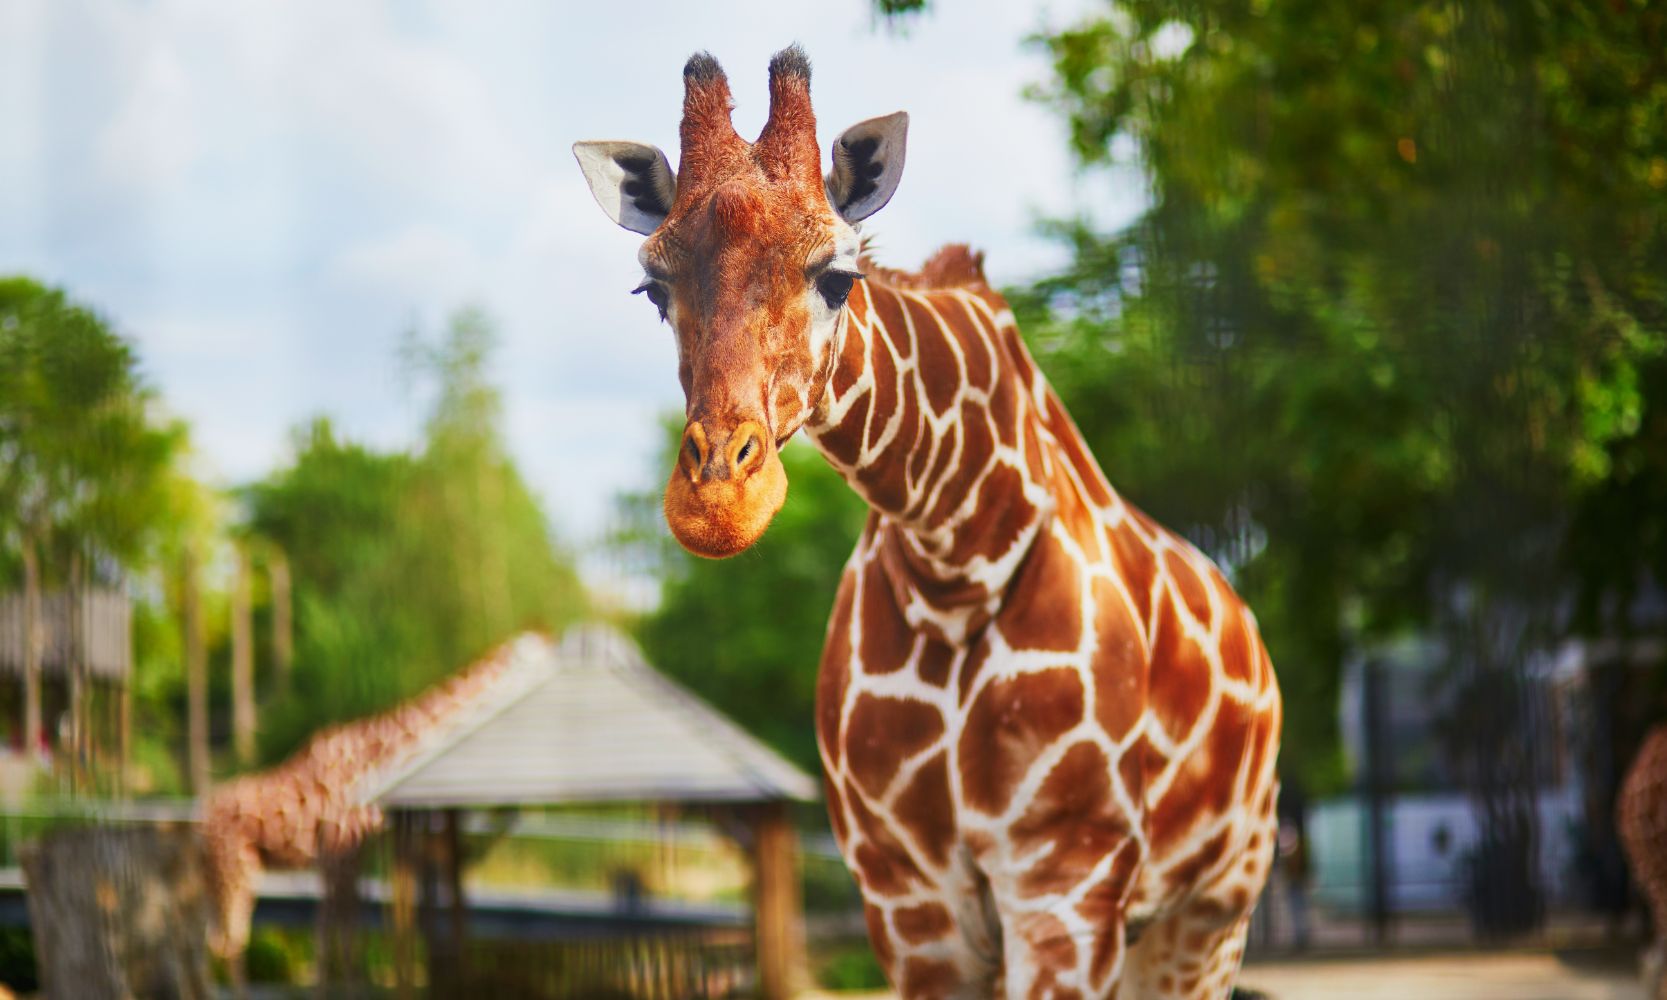 Image of a giraffe at a zoo